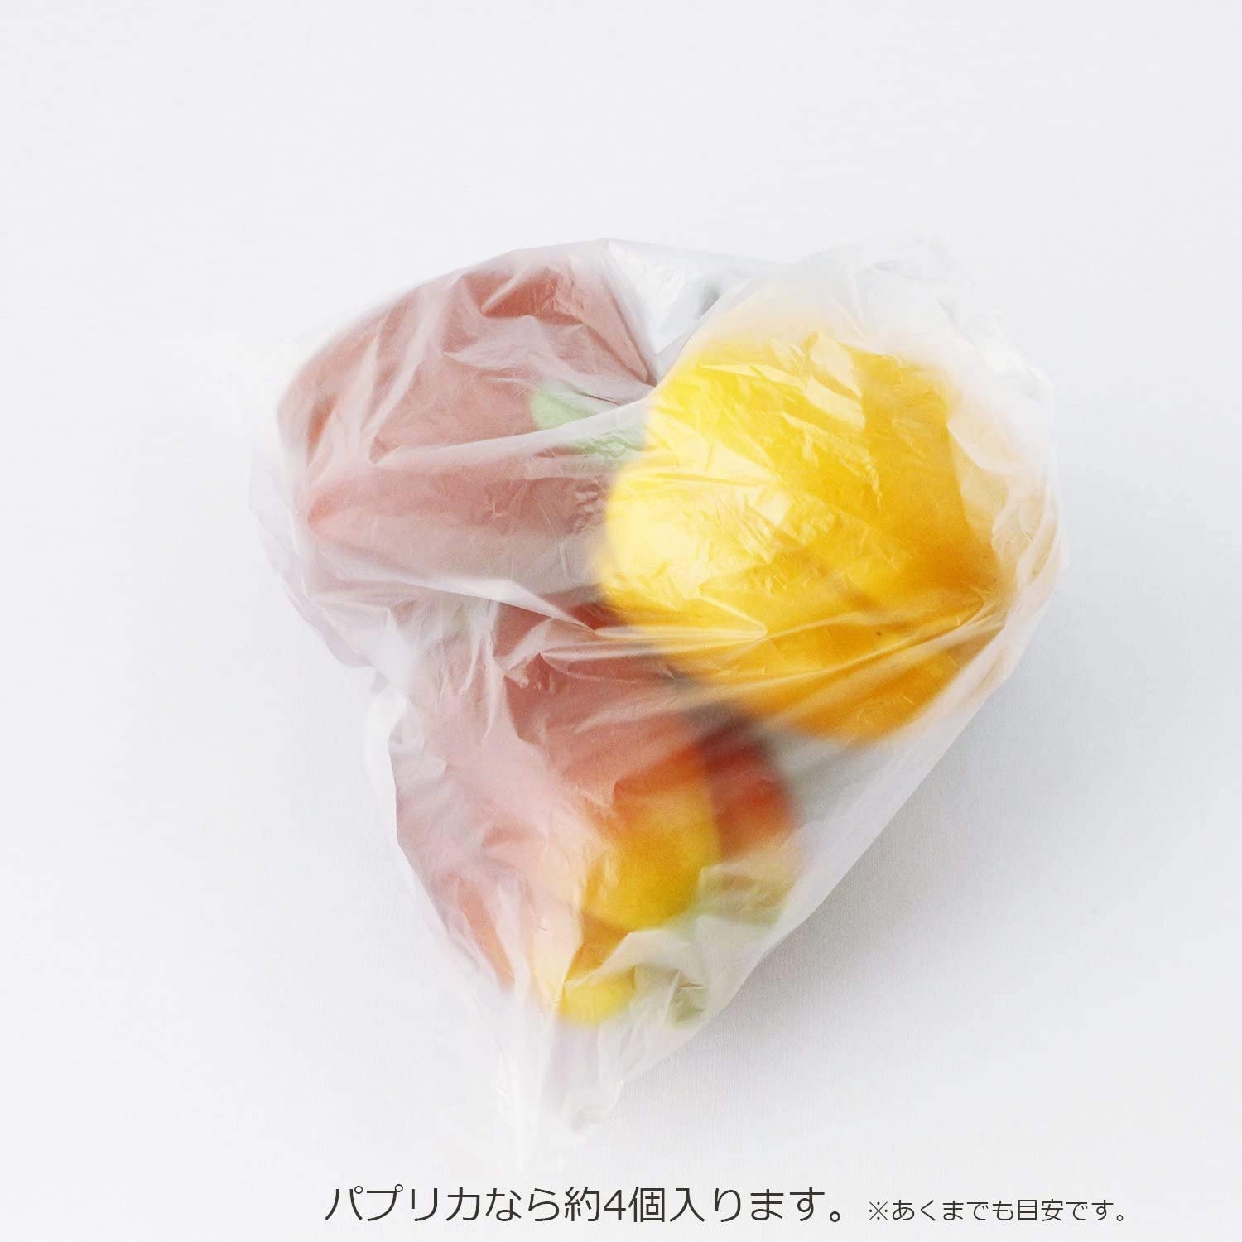 CHEMICAL JAPAN(ケミカルジャパン) とくとくフリーザー用 食品袋 CT-14の商品画像6 